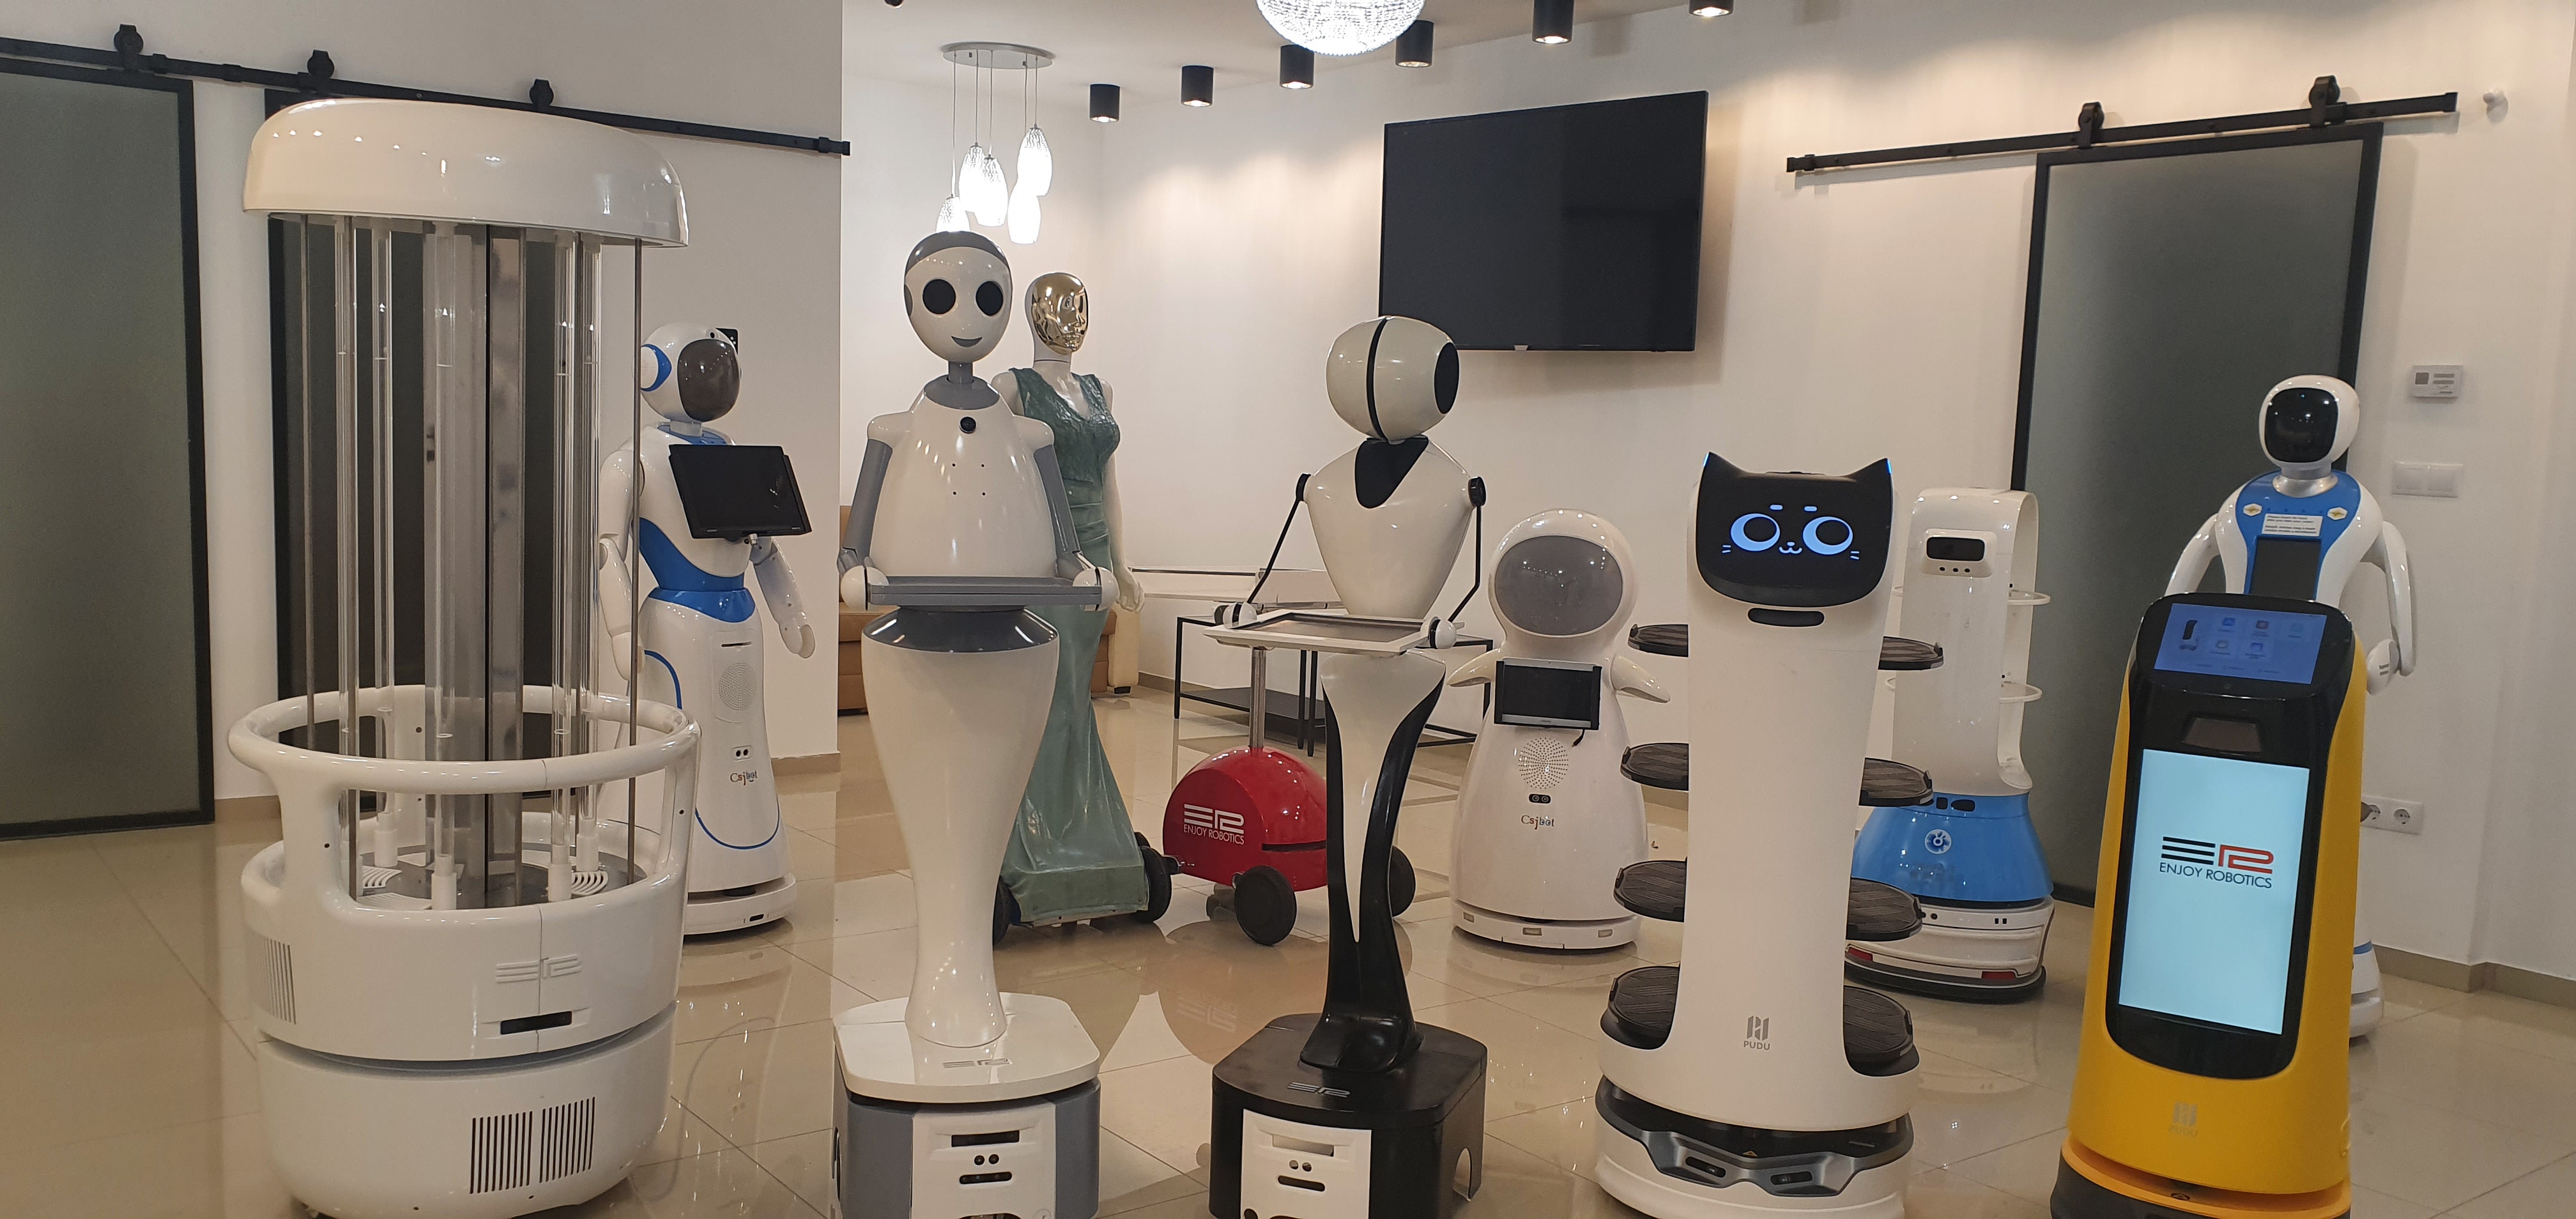 Több ezer robot segítheti az emberek munkáját - Blikk